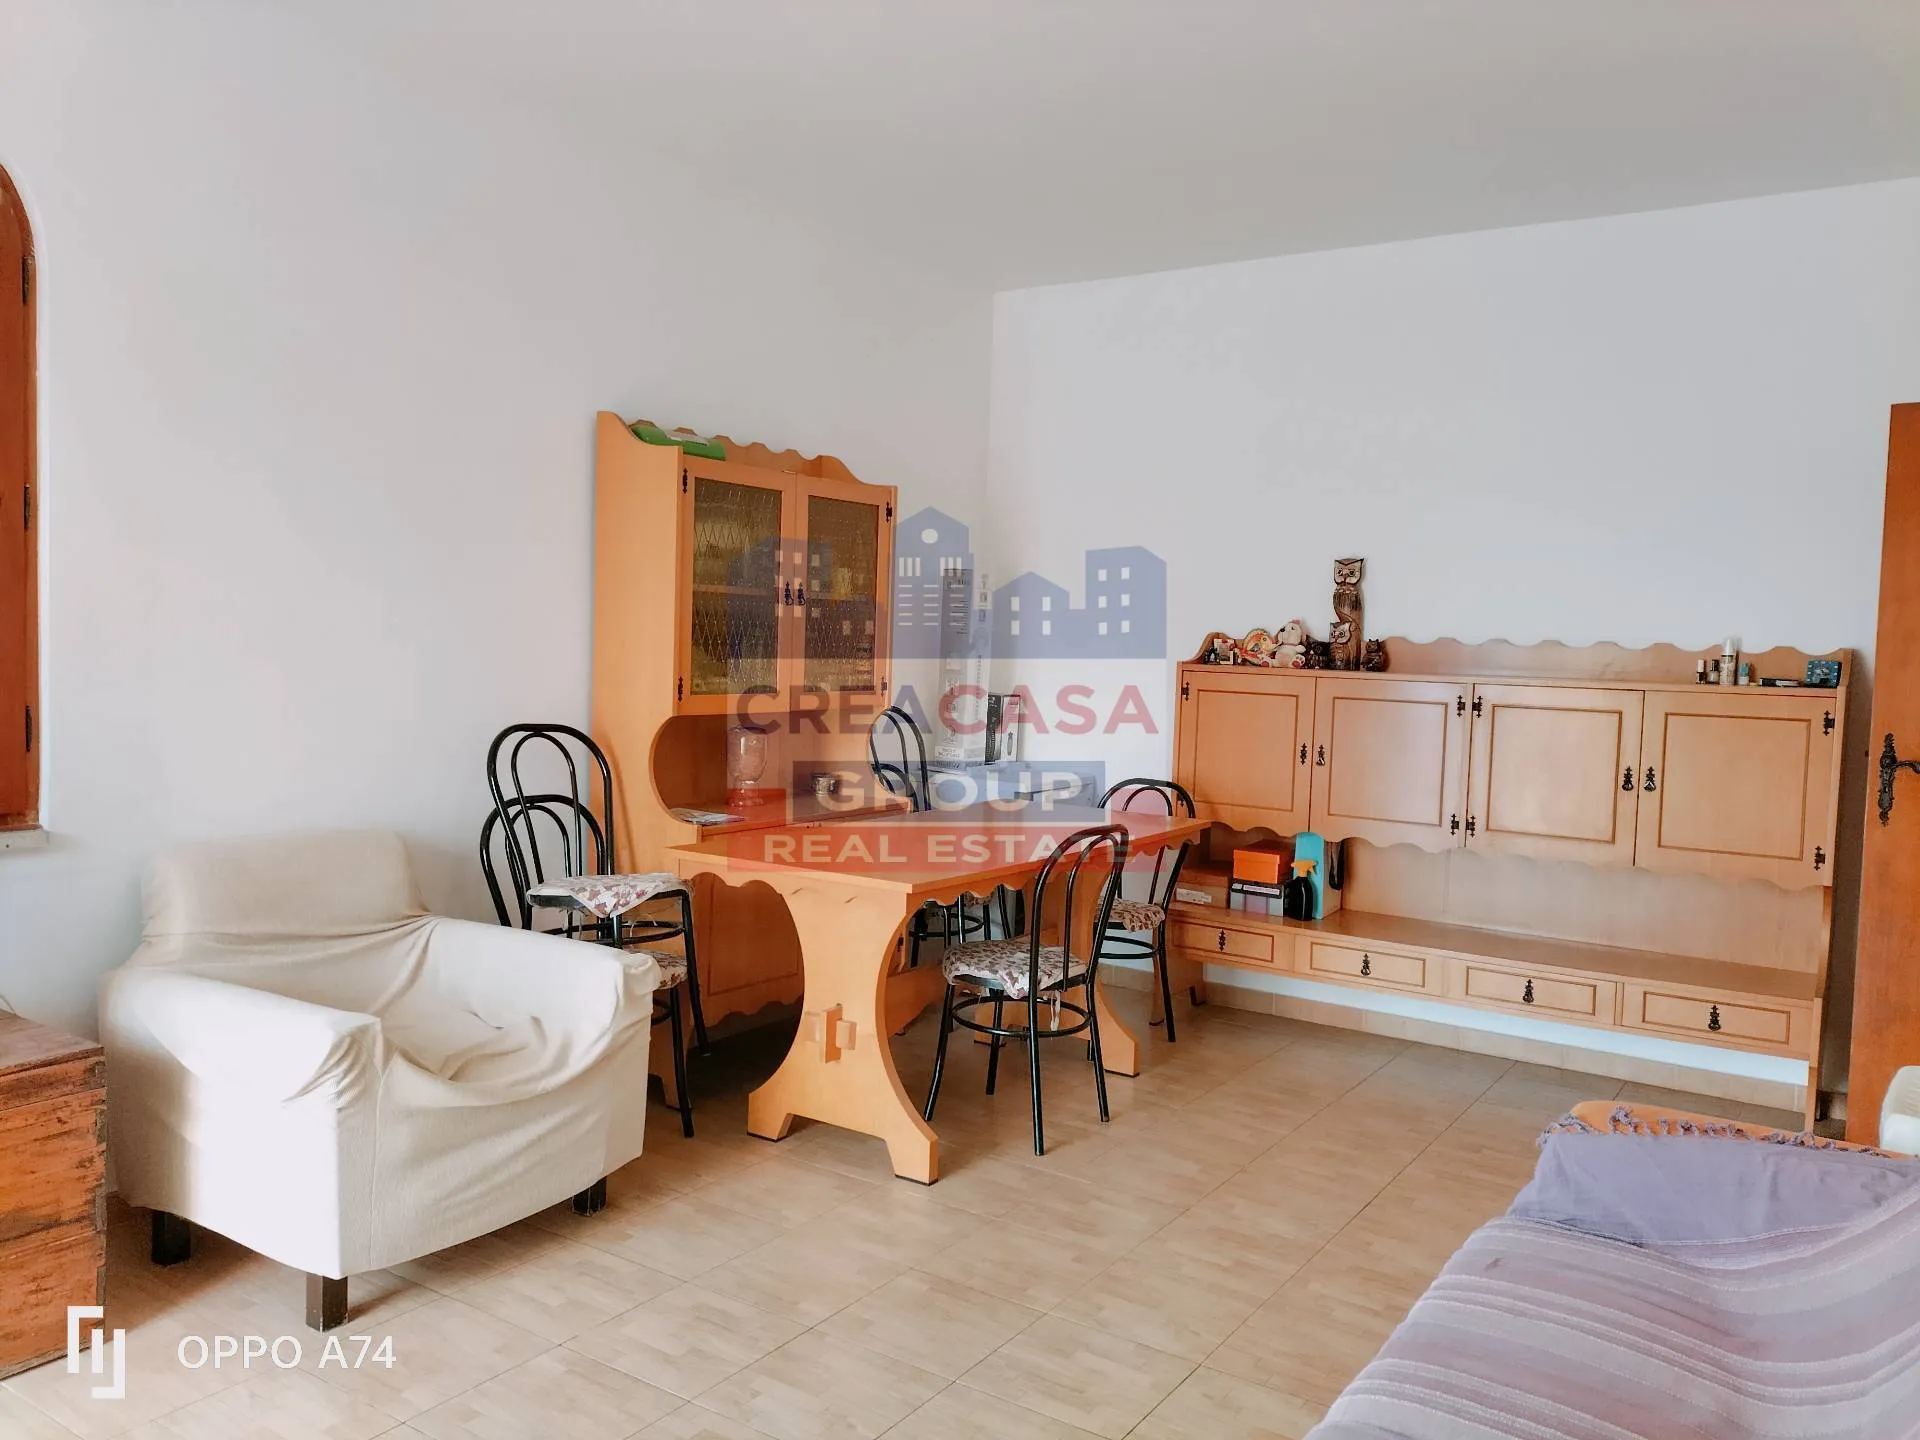 Immagine per Appartamento in vendita a Giardini-Naxos via teocle